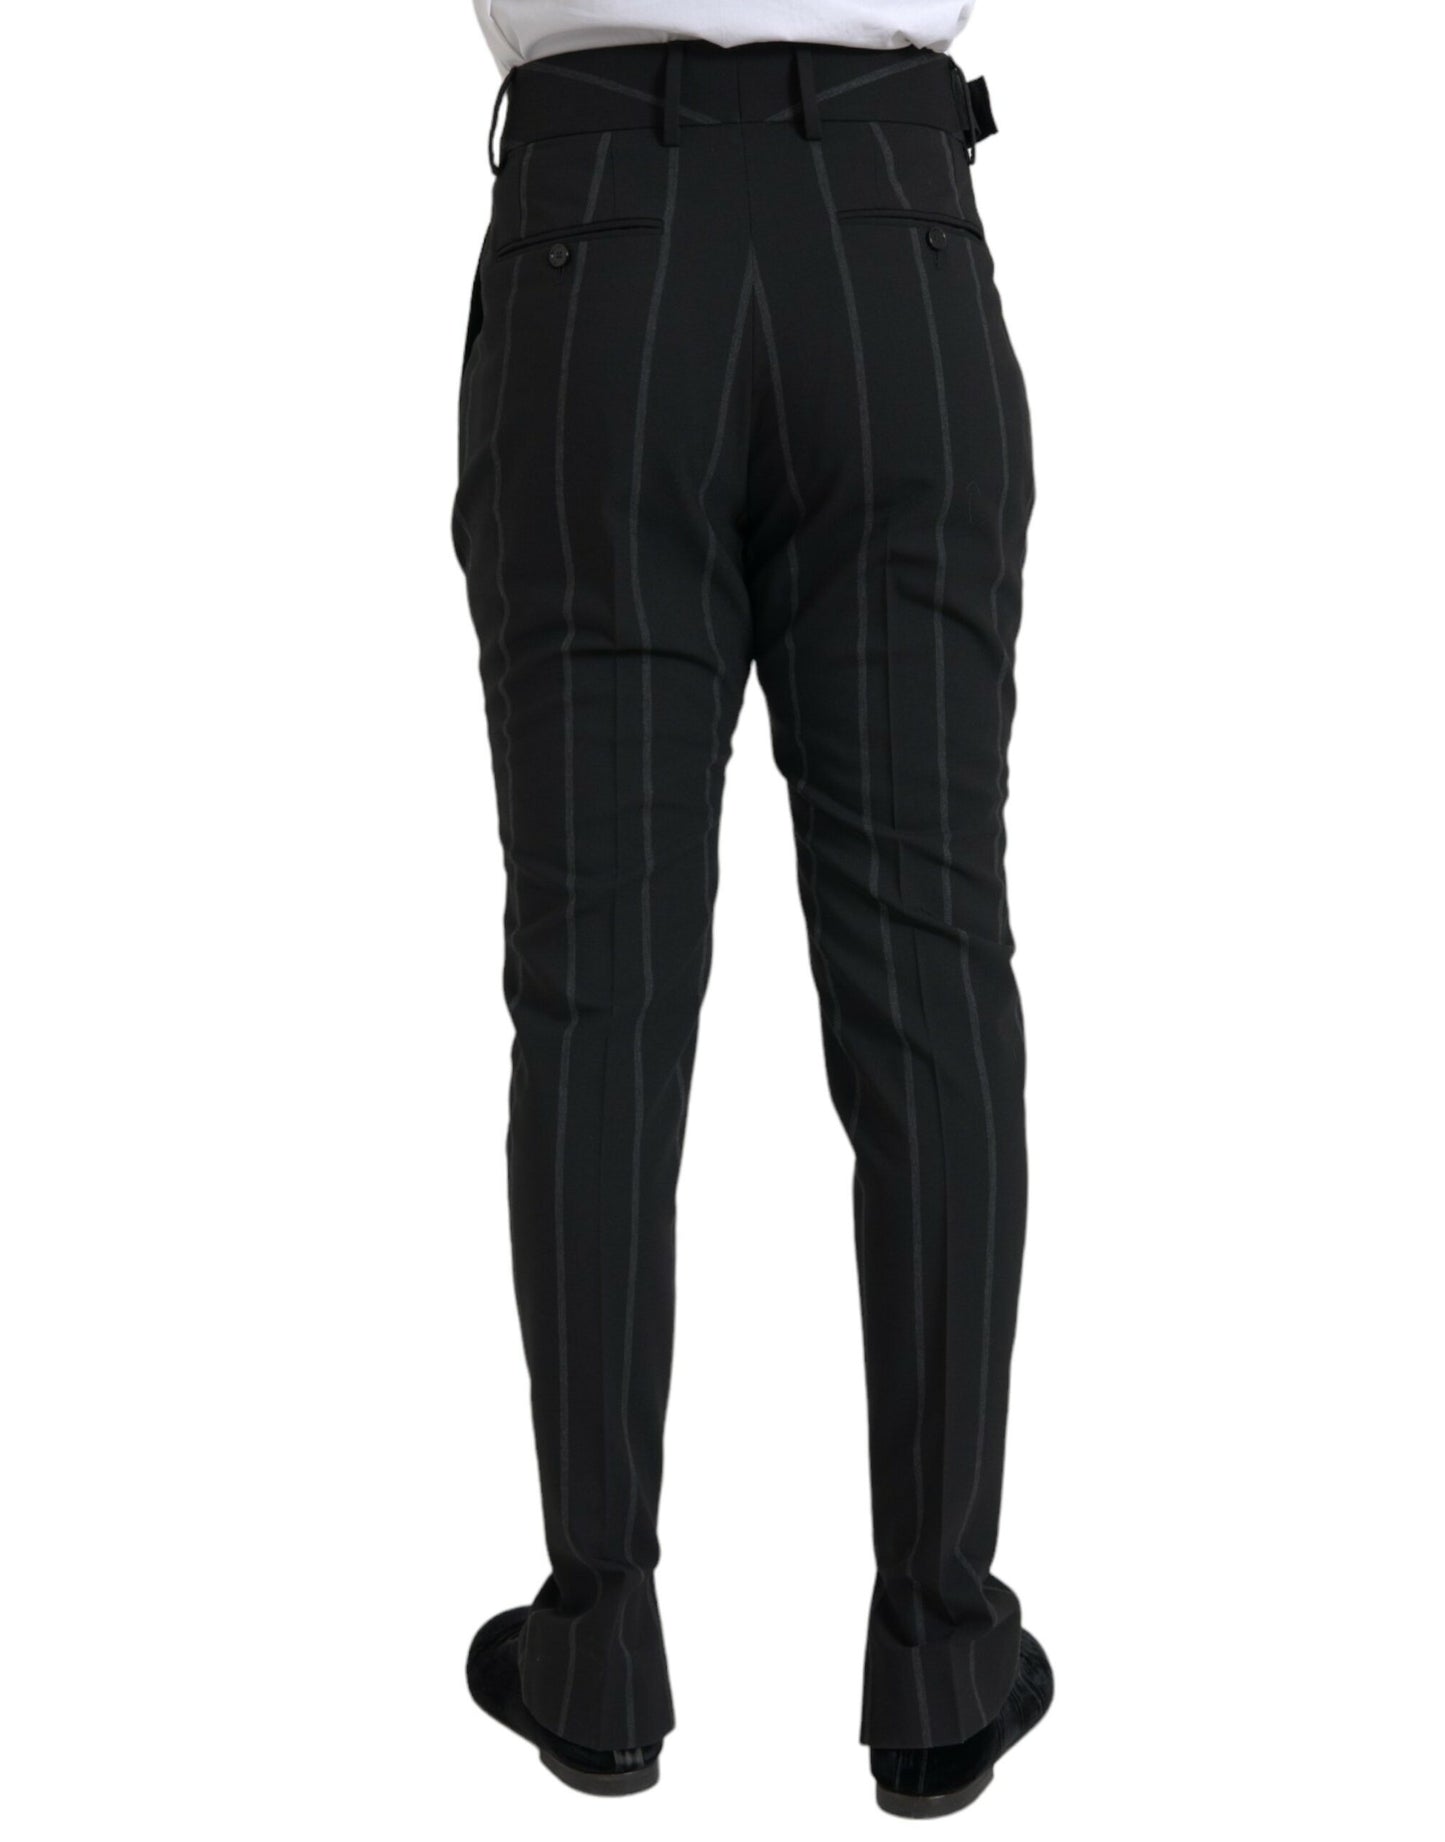 Black Striped Men Slim Dress Pants